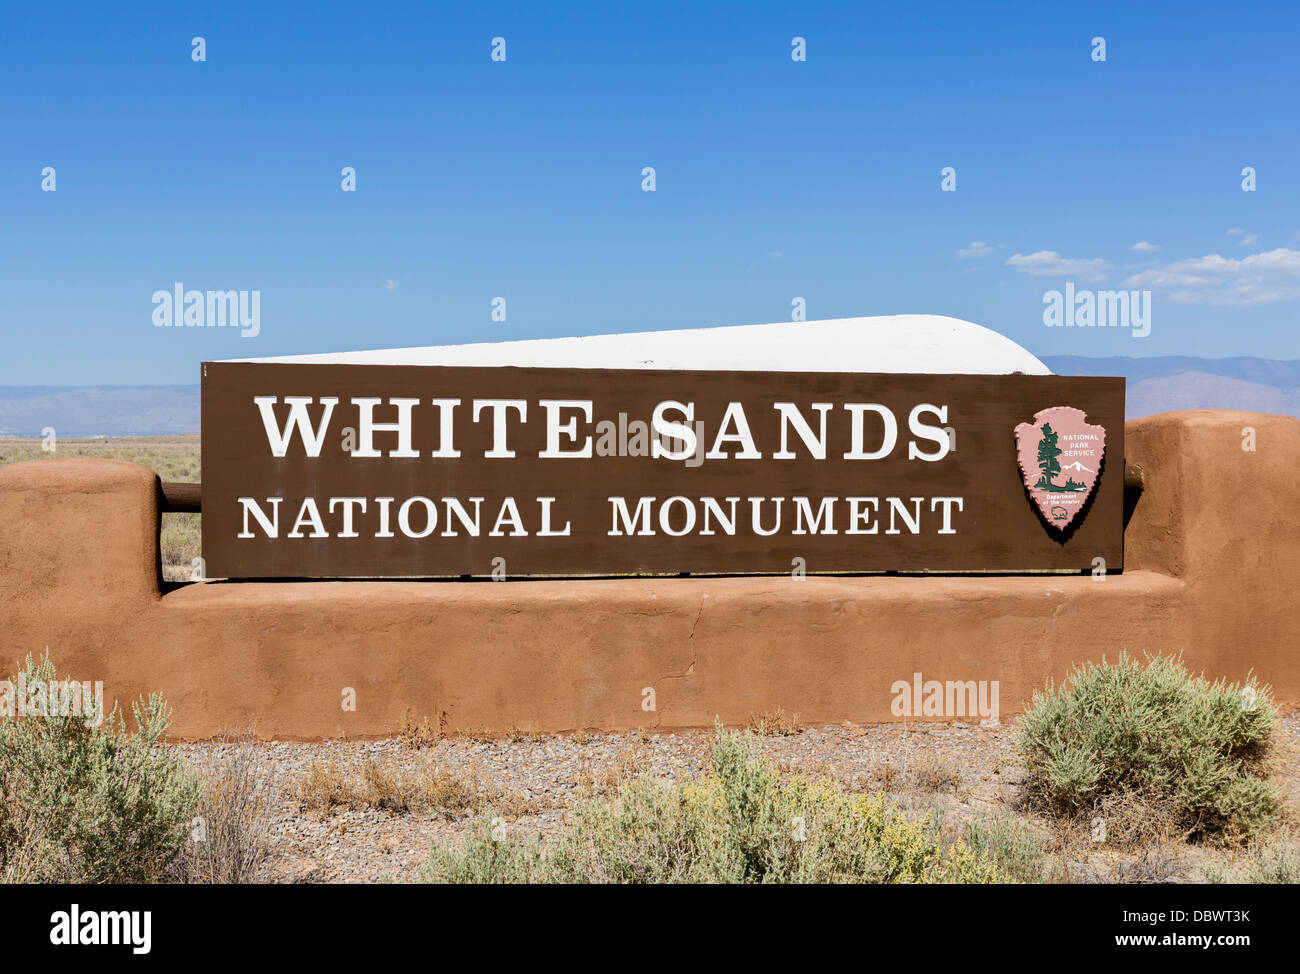 Hierhin zum White Sands National Monument in der Nähe von Alamogordo, New Mexico, USA Stockfoto